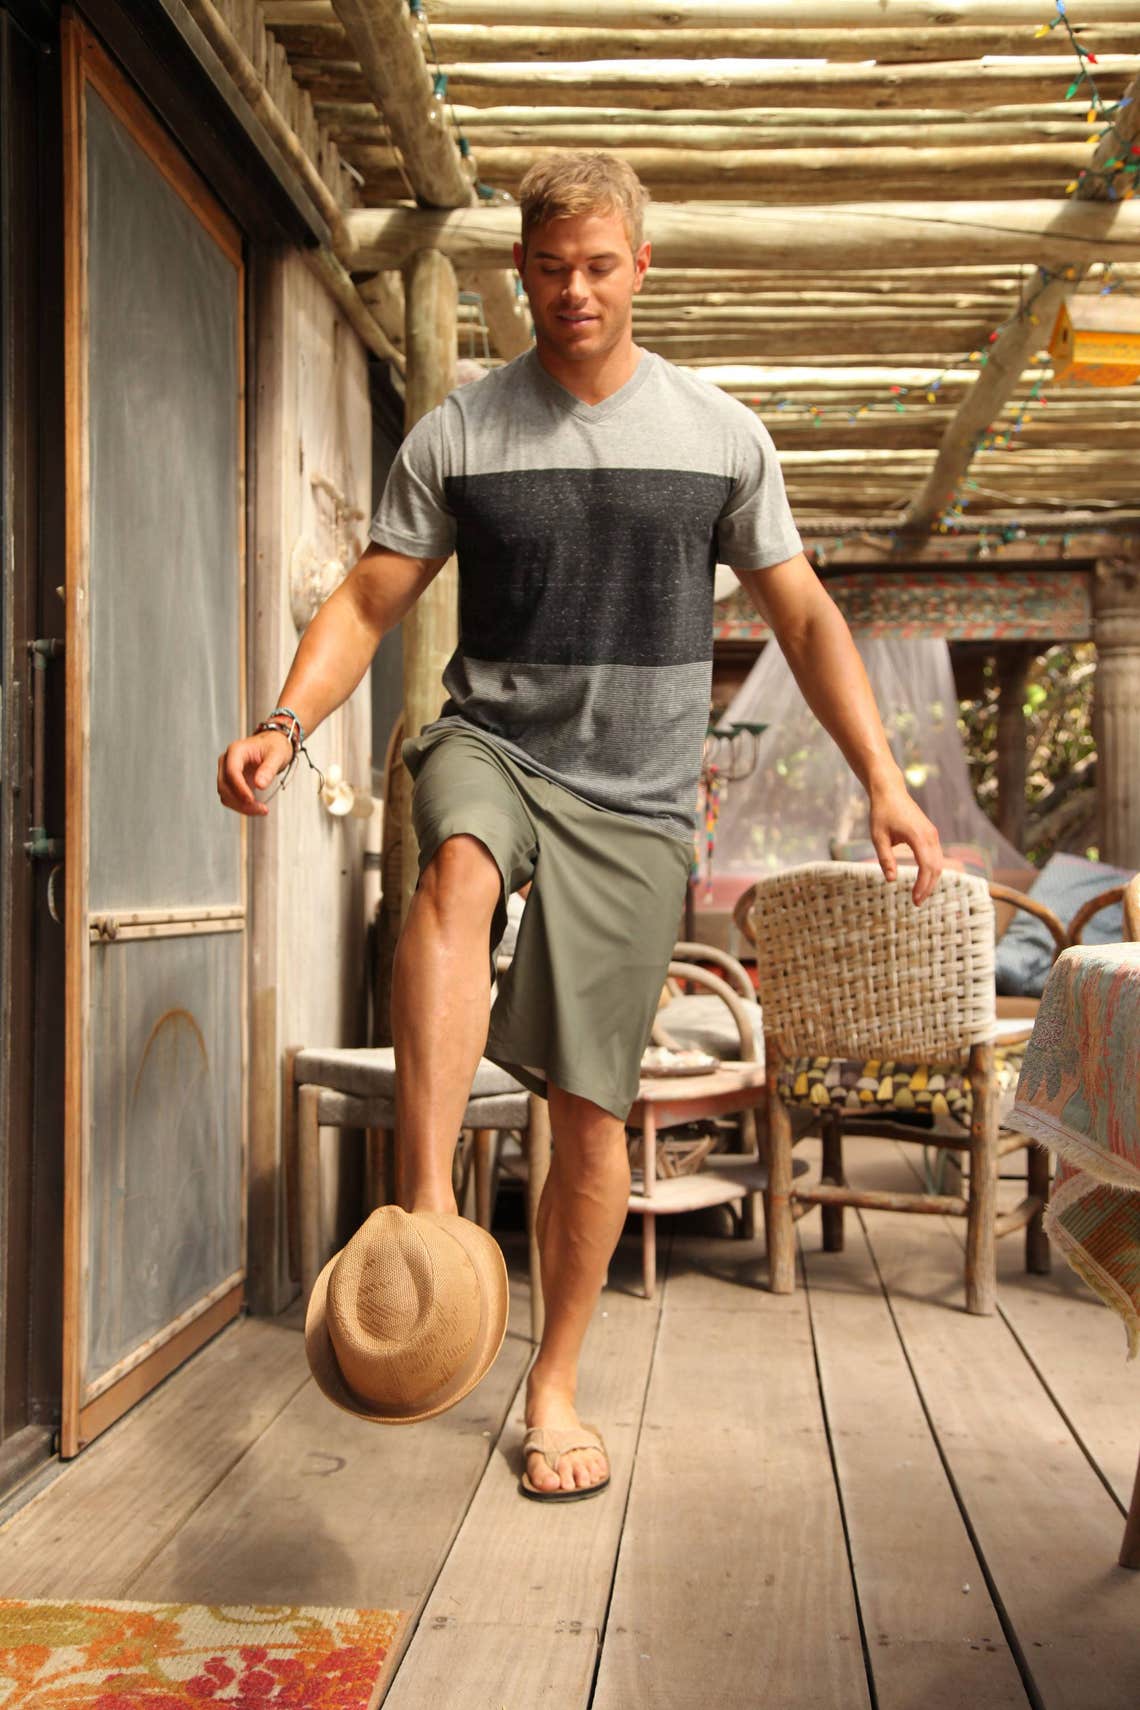 Mens Summer Print Shirt & Hawaii Shirts | Party outfit men, Pool party  outfits, Beach party outfits